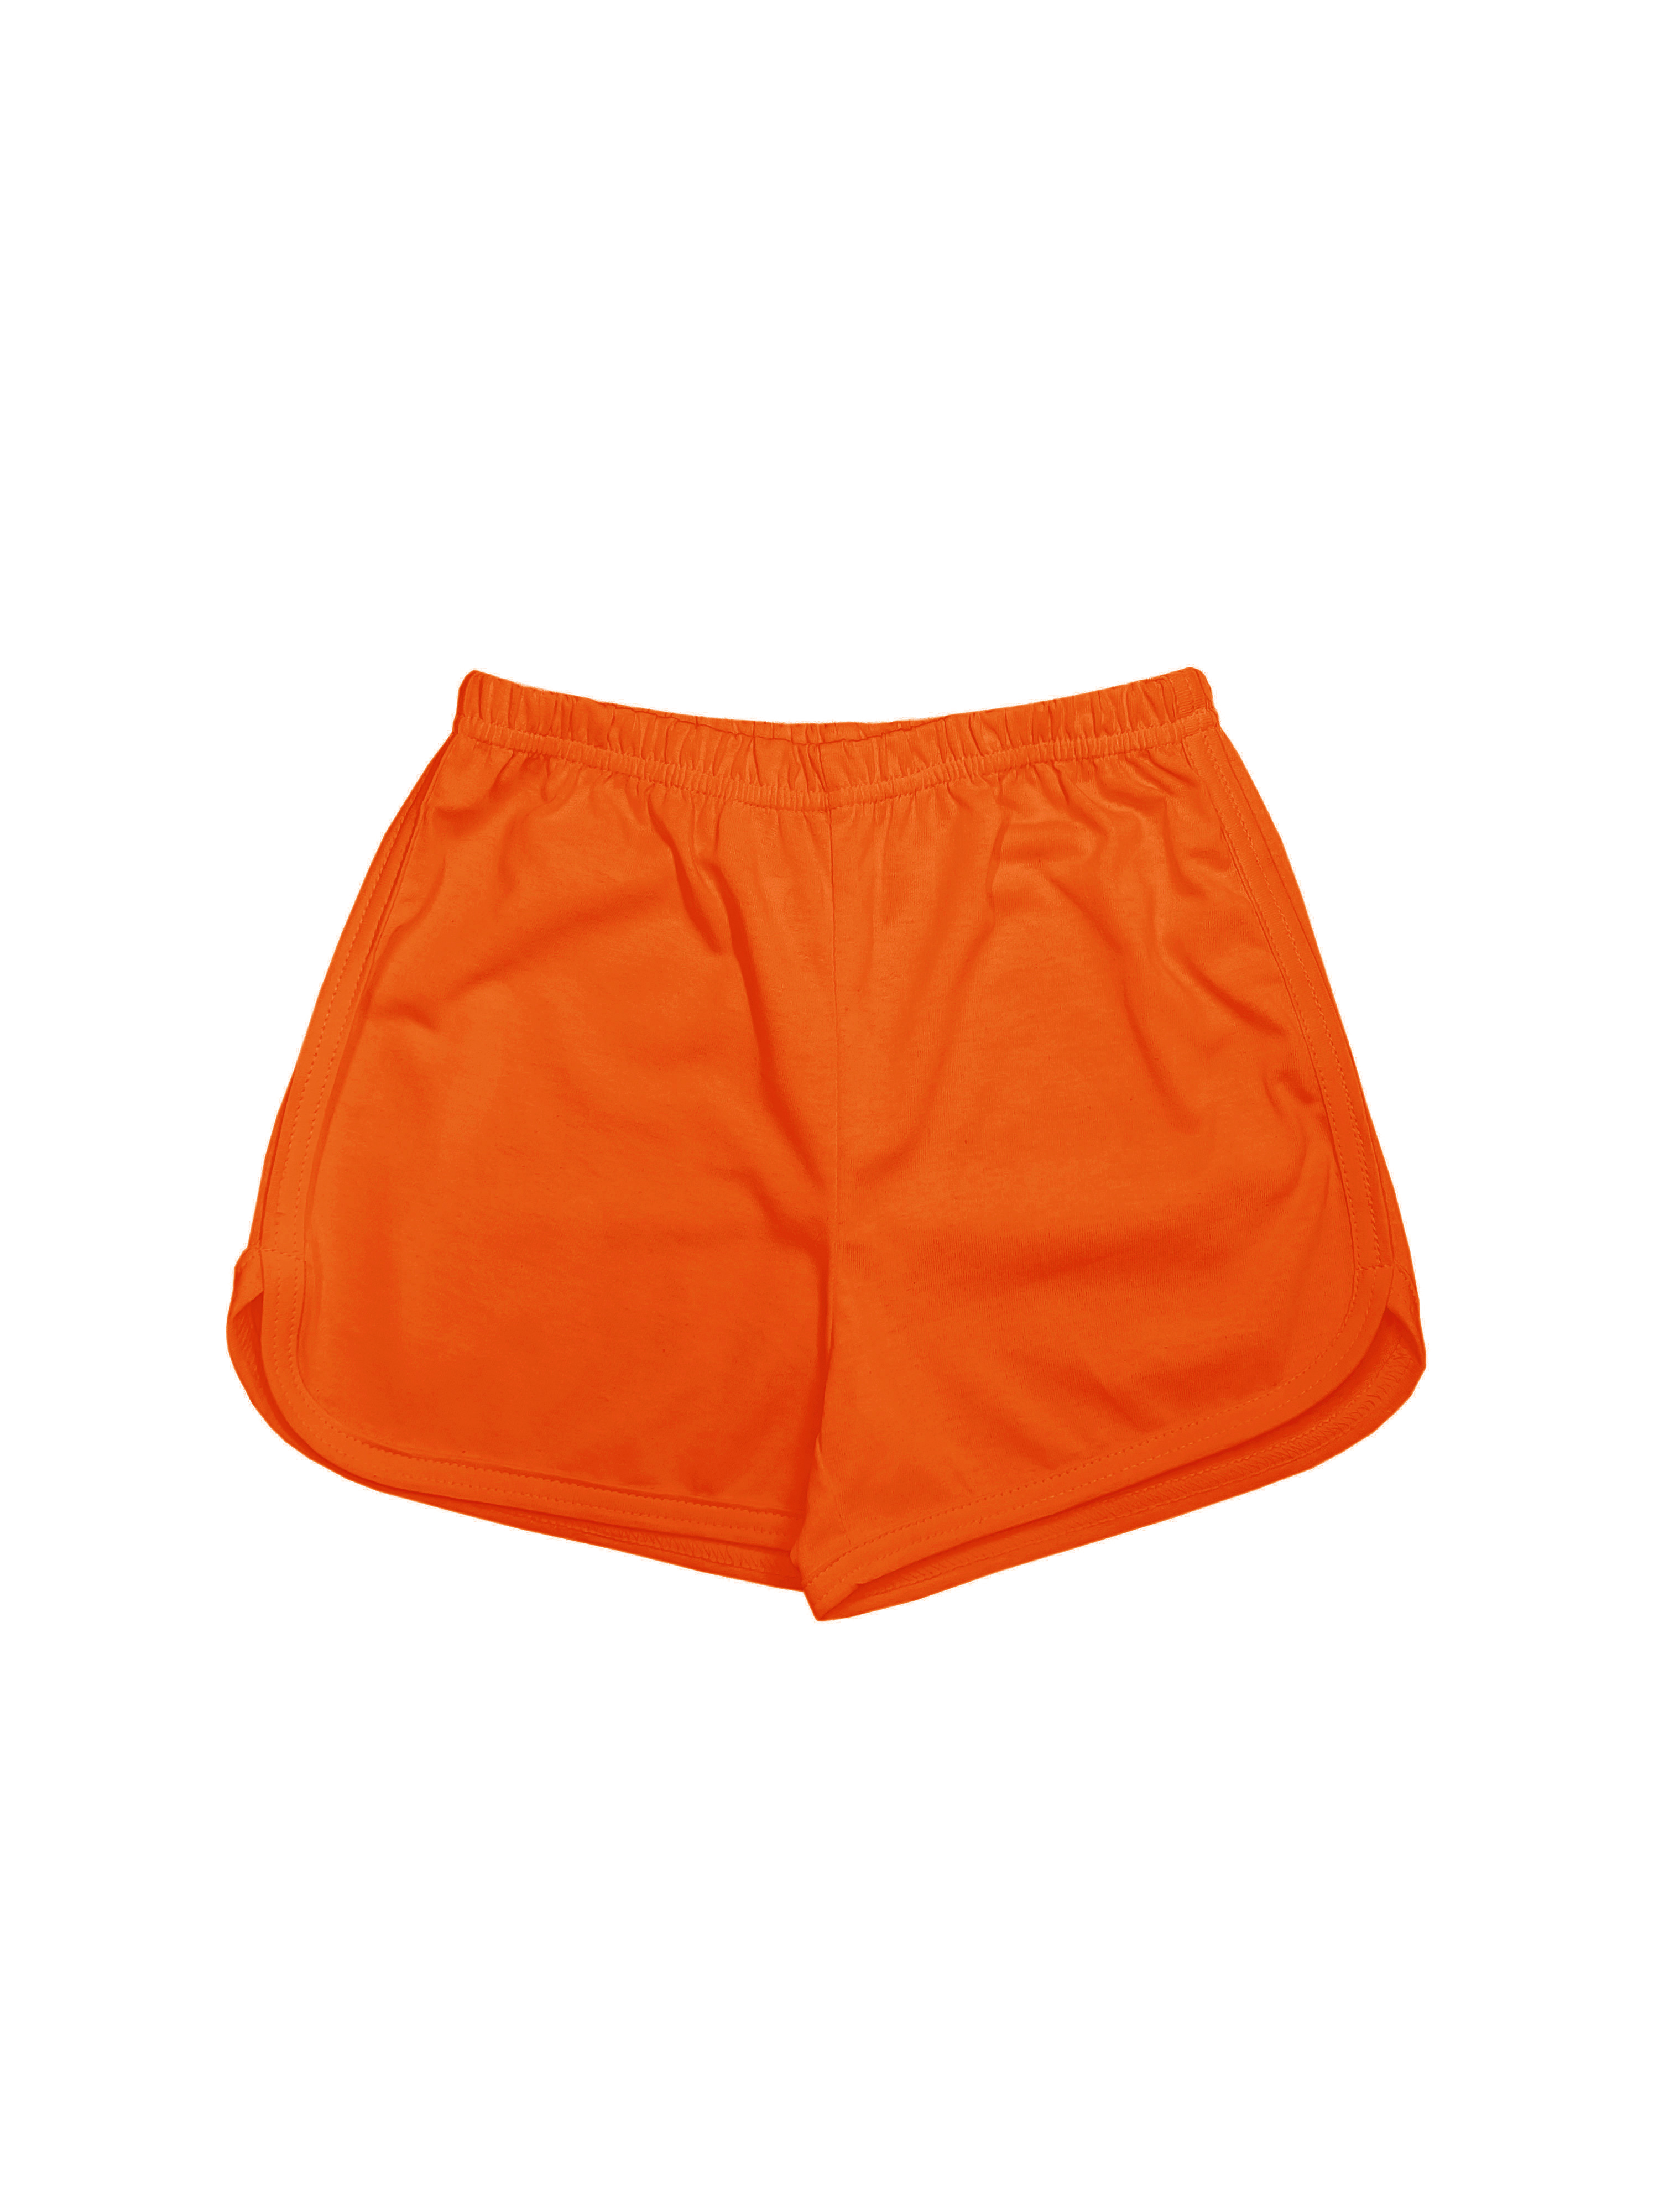 Шорты детские Детрик ШД-0322, оранжевый, 116 мяч для художественной гимнастики однотонный d15см torres пвх ag 15 04 оранжевый